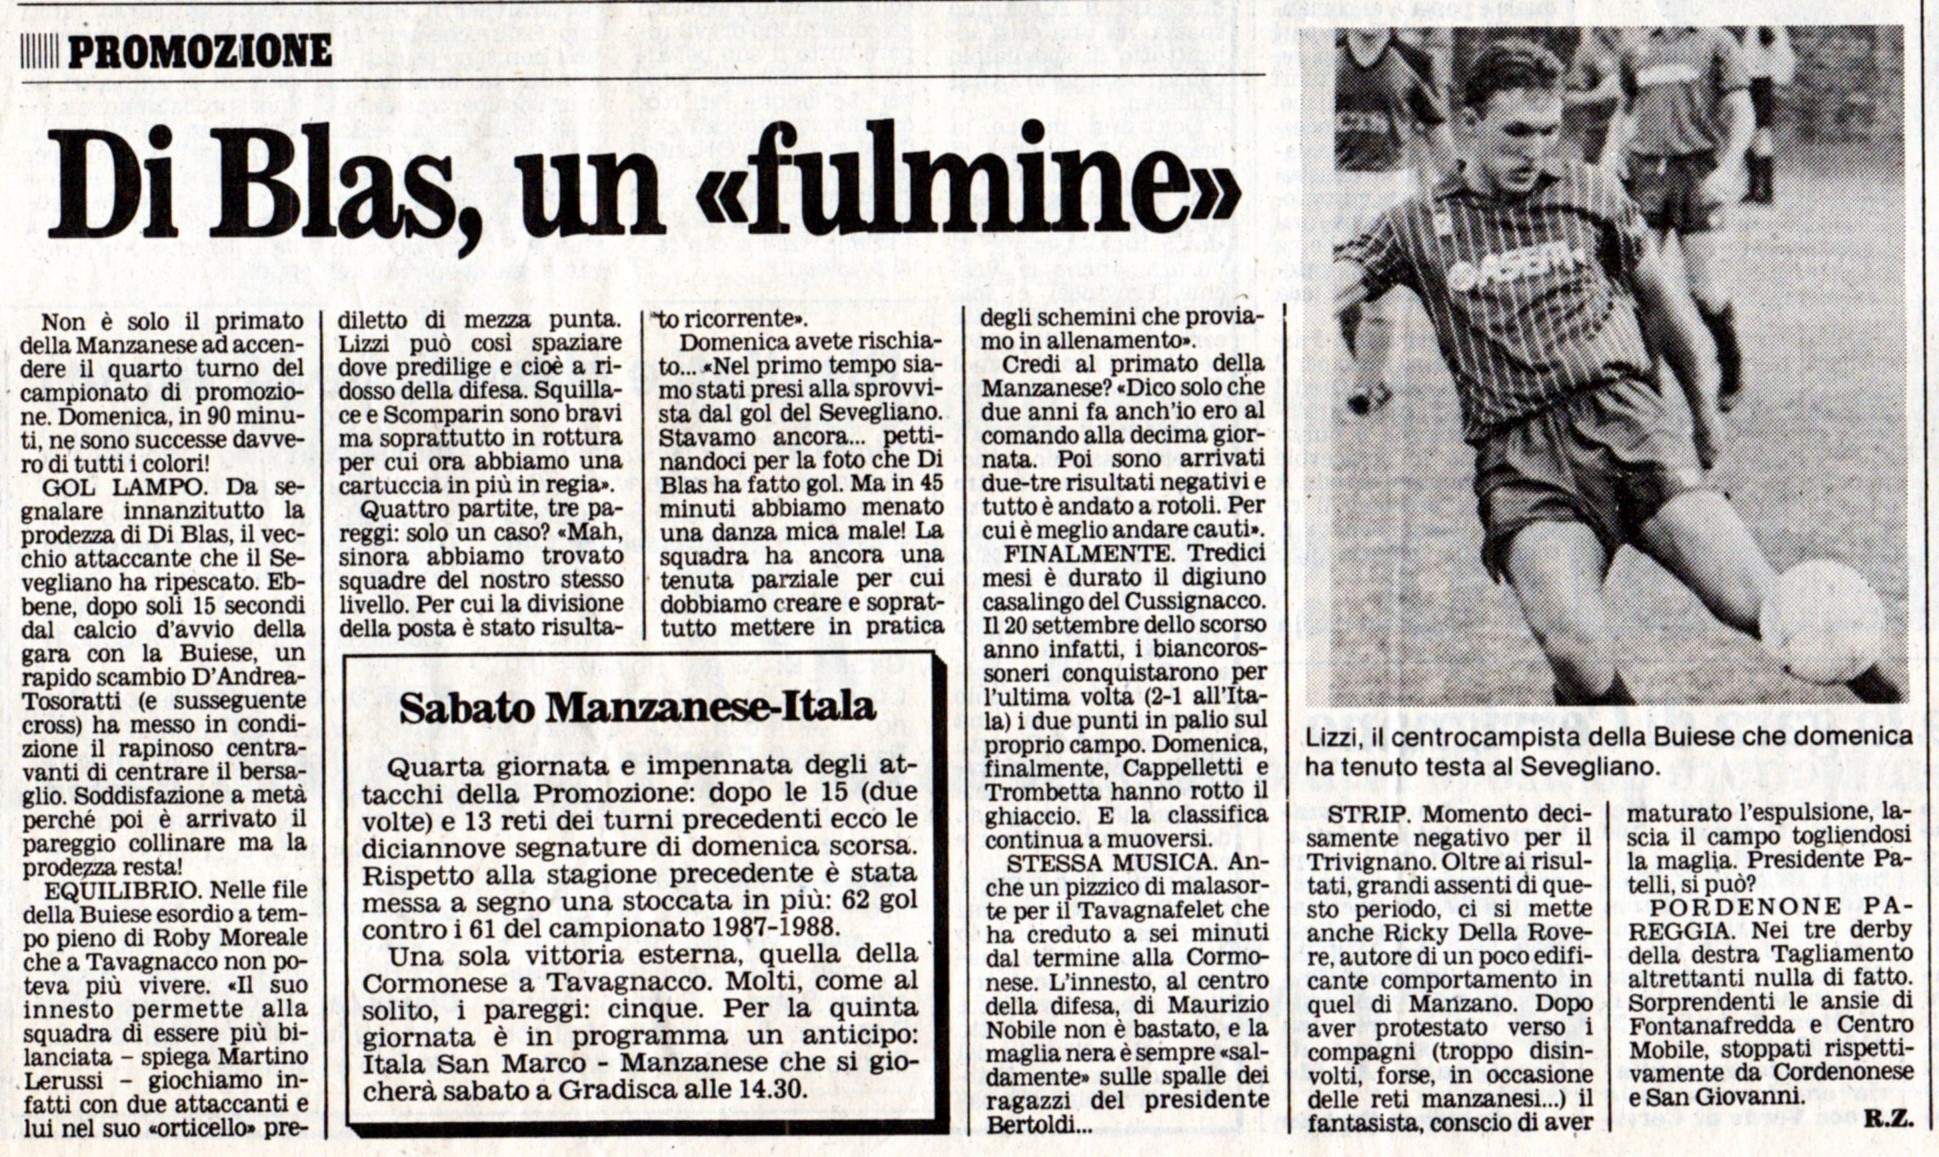 1988 Buiese-Sevegliano Di Blas Claudio gol dopo 15 secondi - 677